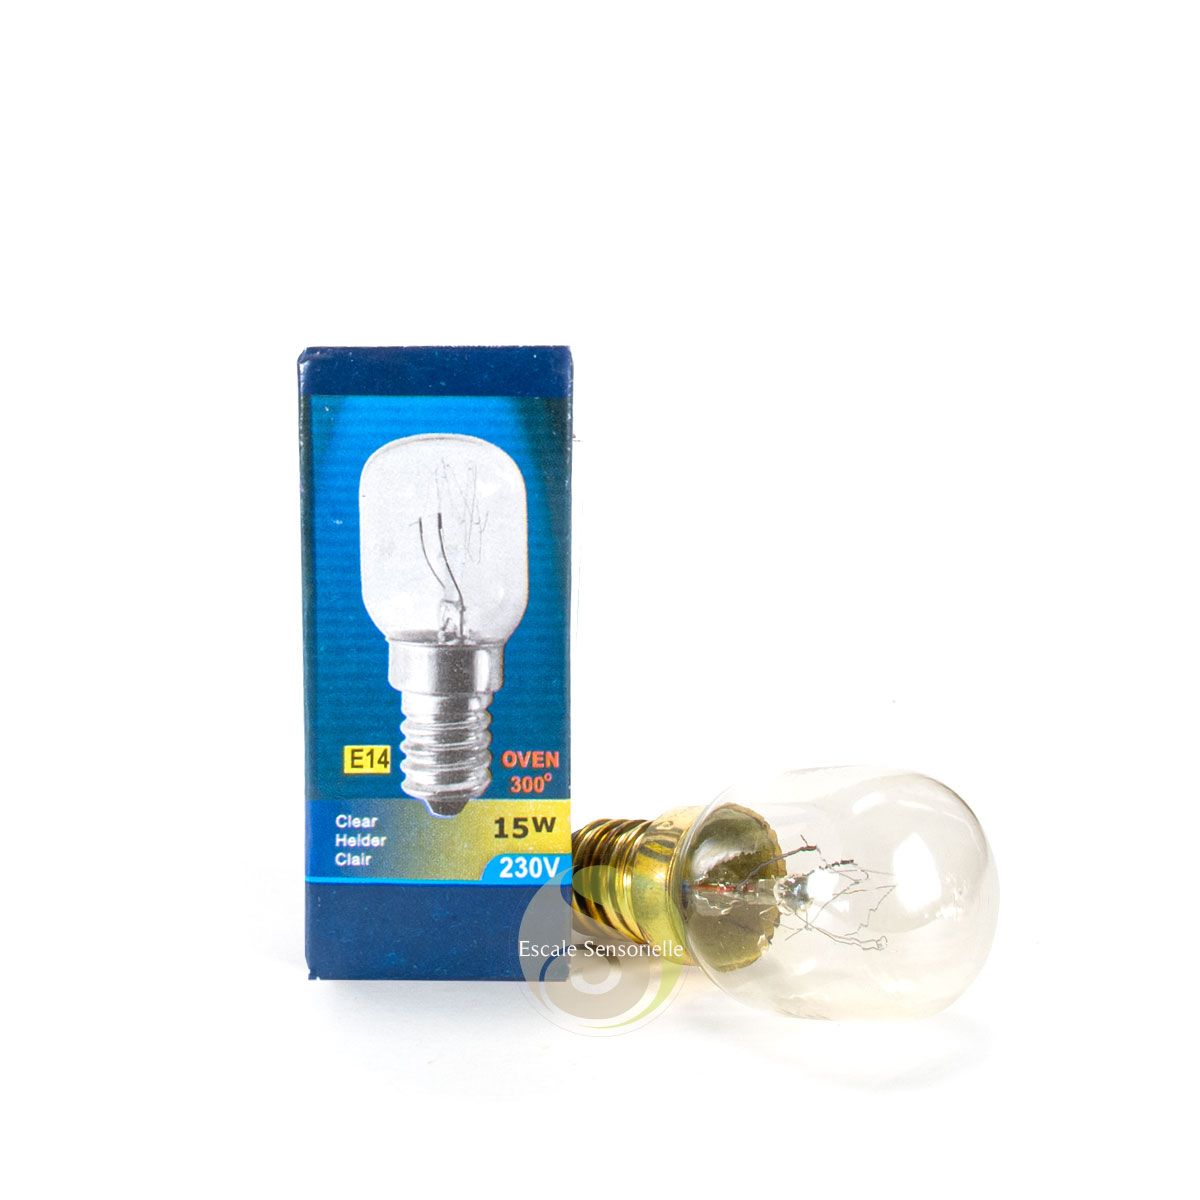 Ampoule 15w type E14 pour lampe de sel d'Himalaya - Escale Sensorielle